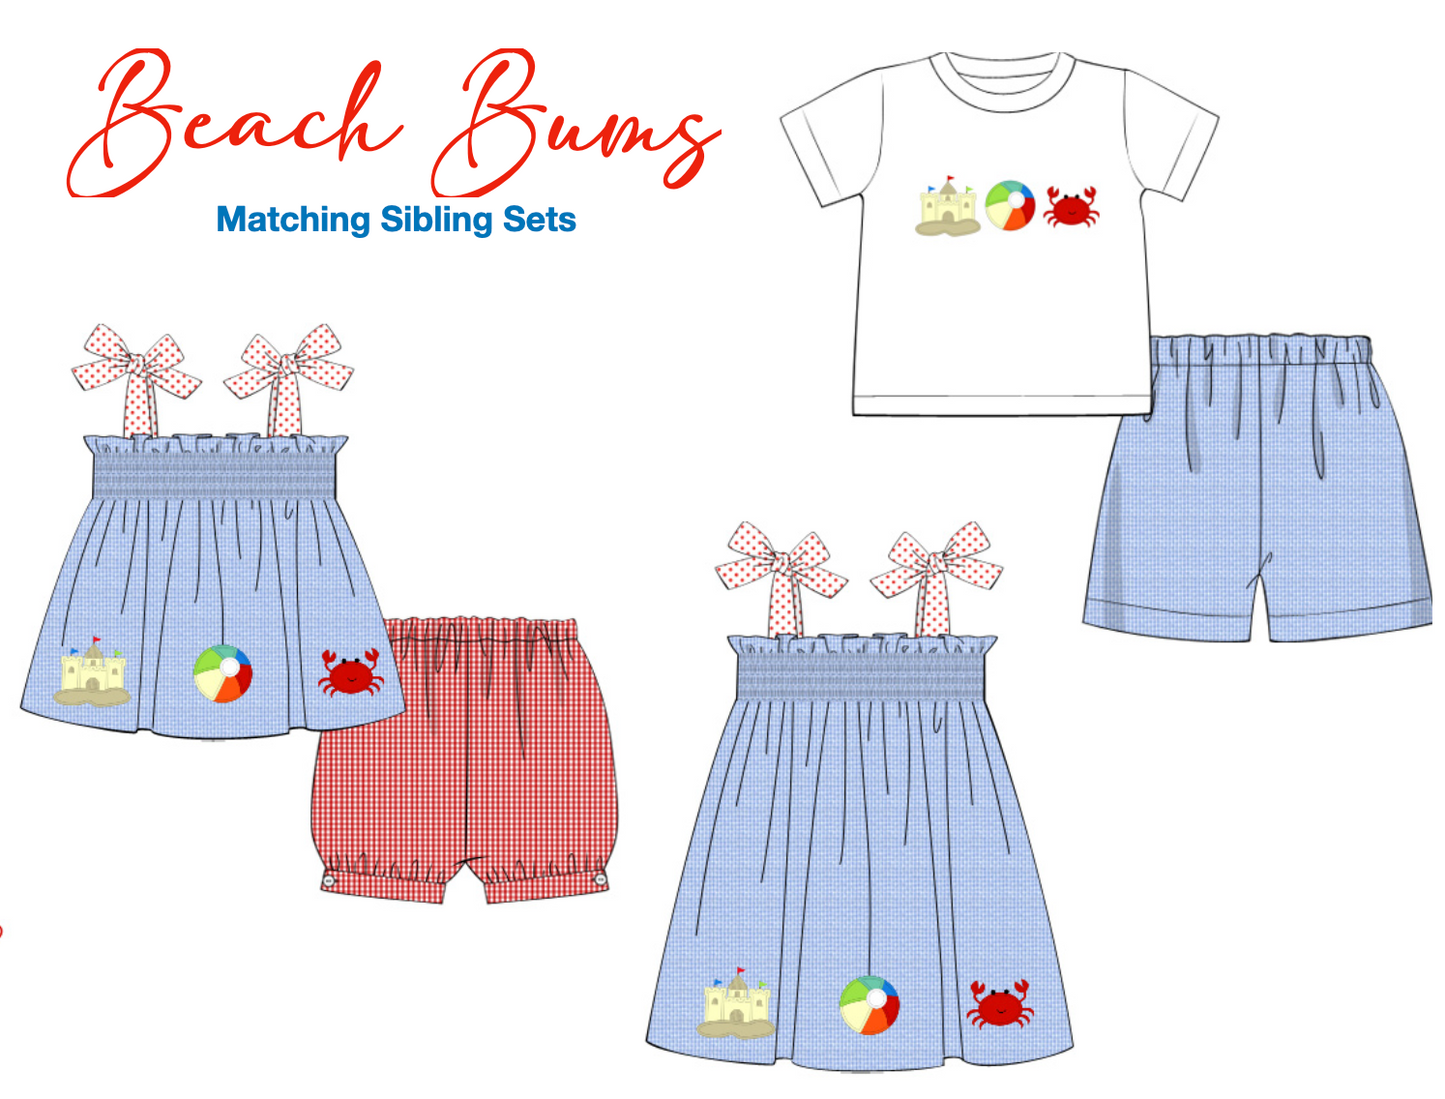 PREORDER 16: Beach Bums Boys Short Set